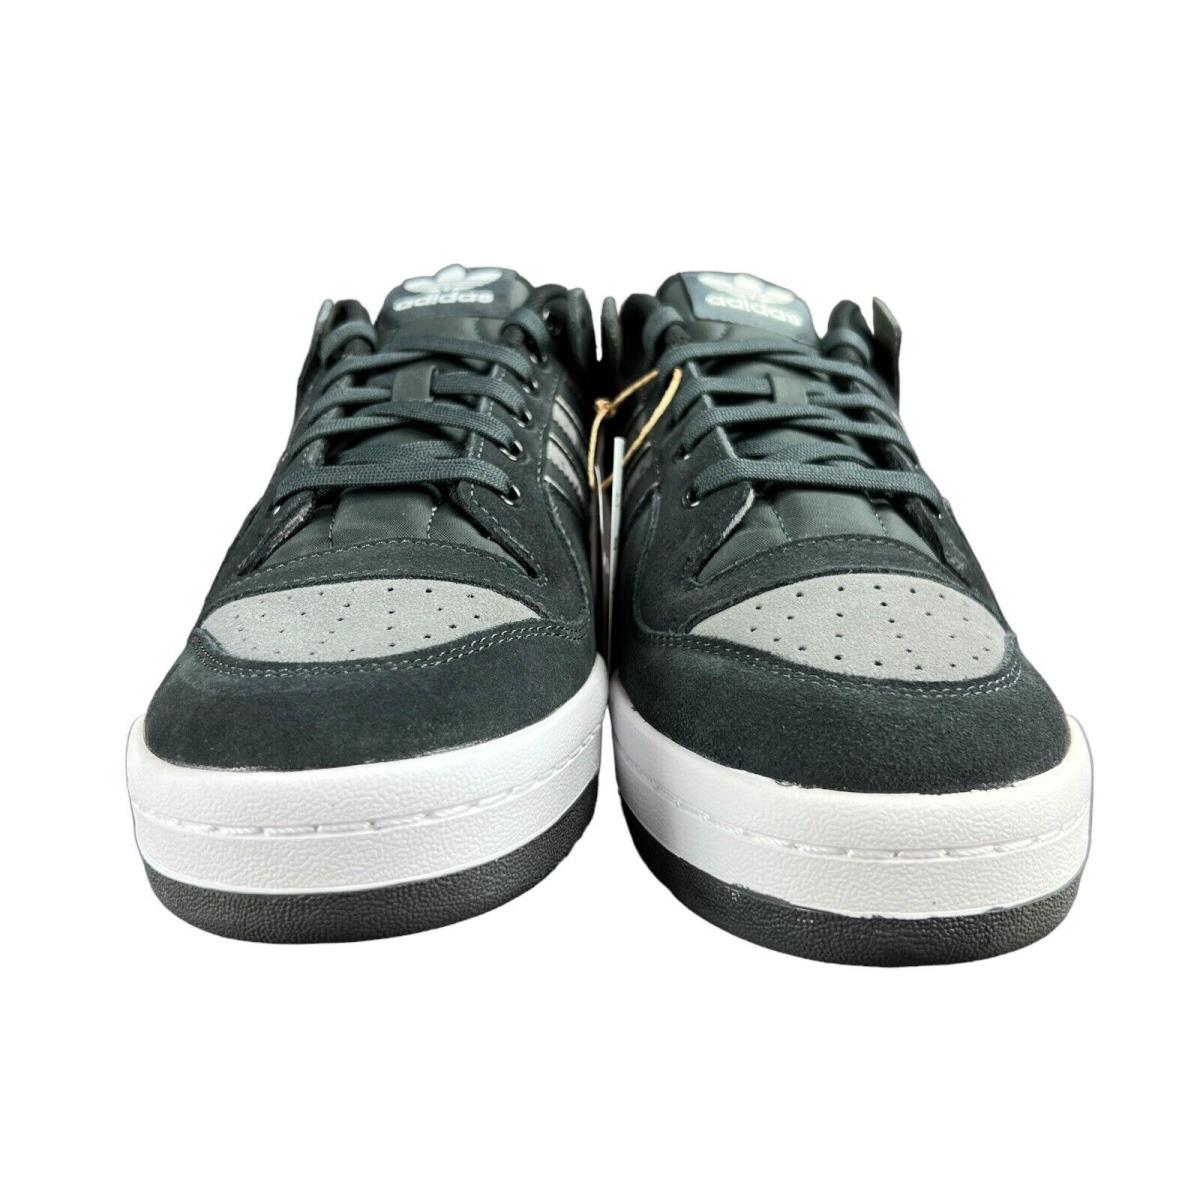 Adidas Forum 84 Low Advantage Carbon Grey Shoes IG7585 Men`s Sizes 7.5 - 13 - Gray